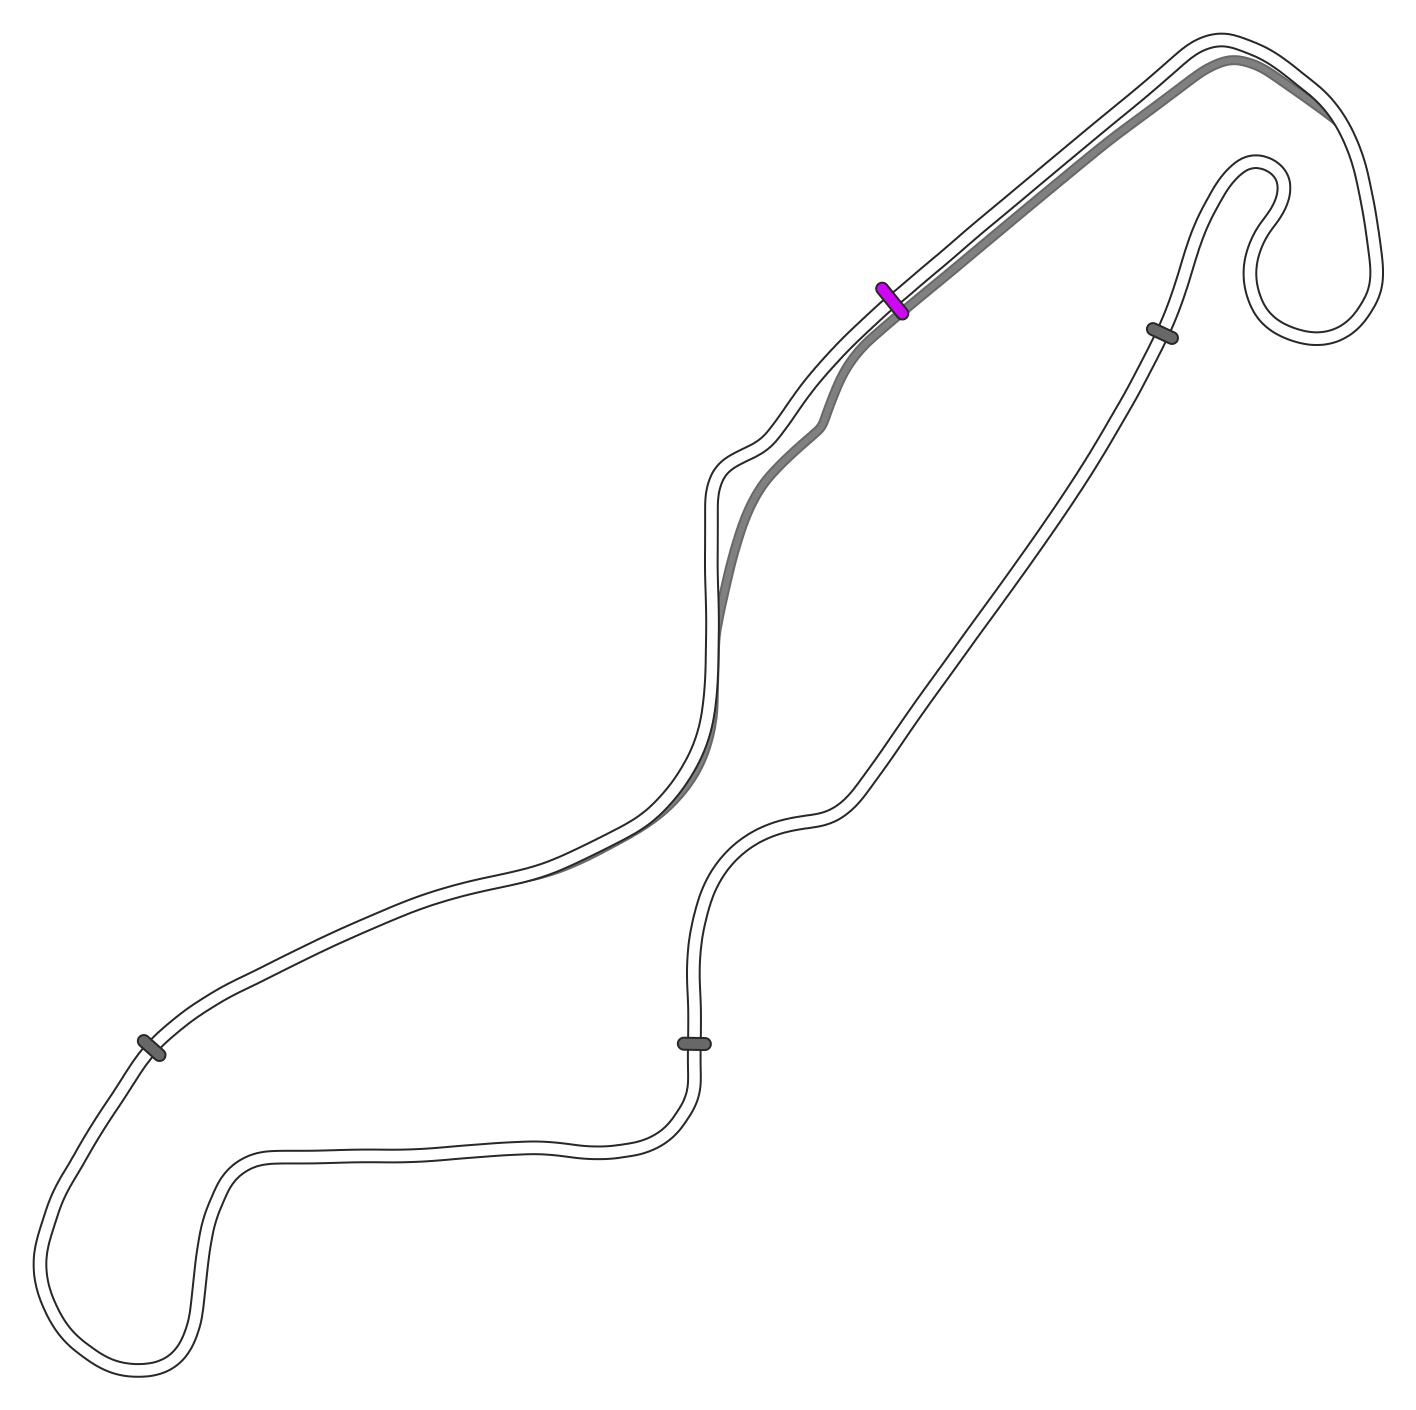 TT Circuit Assen Autosport